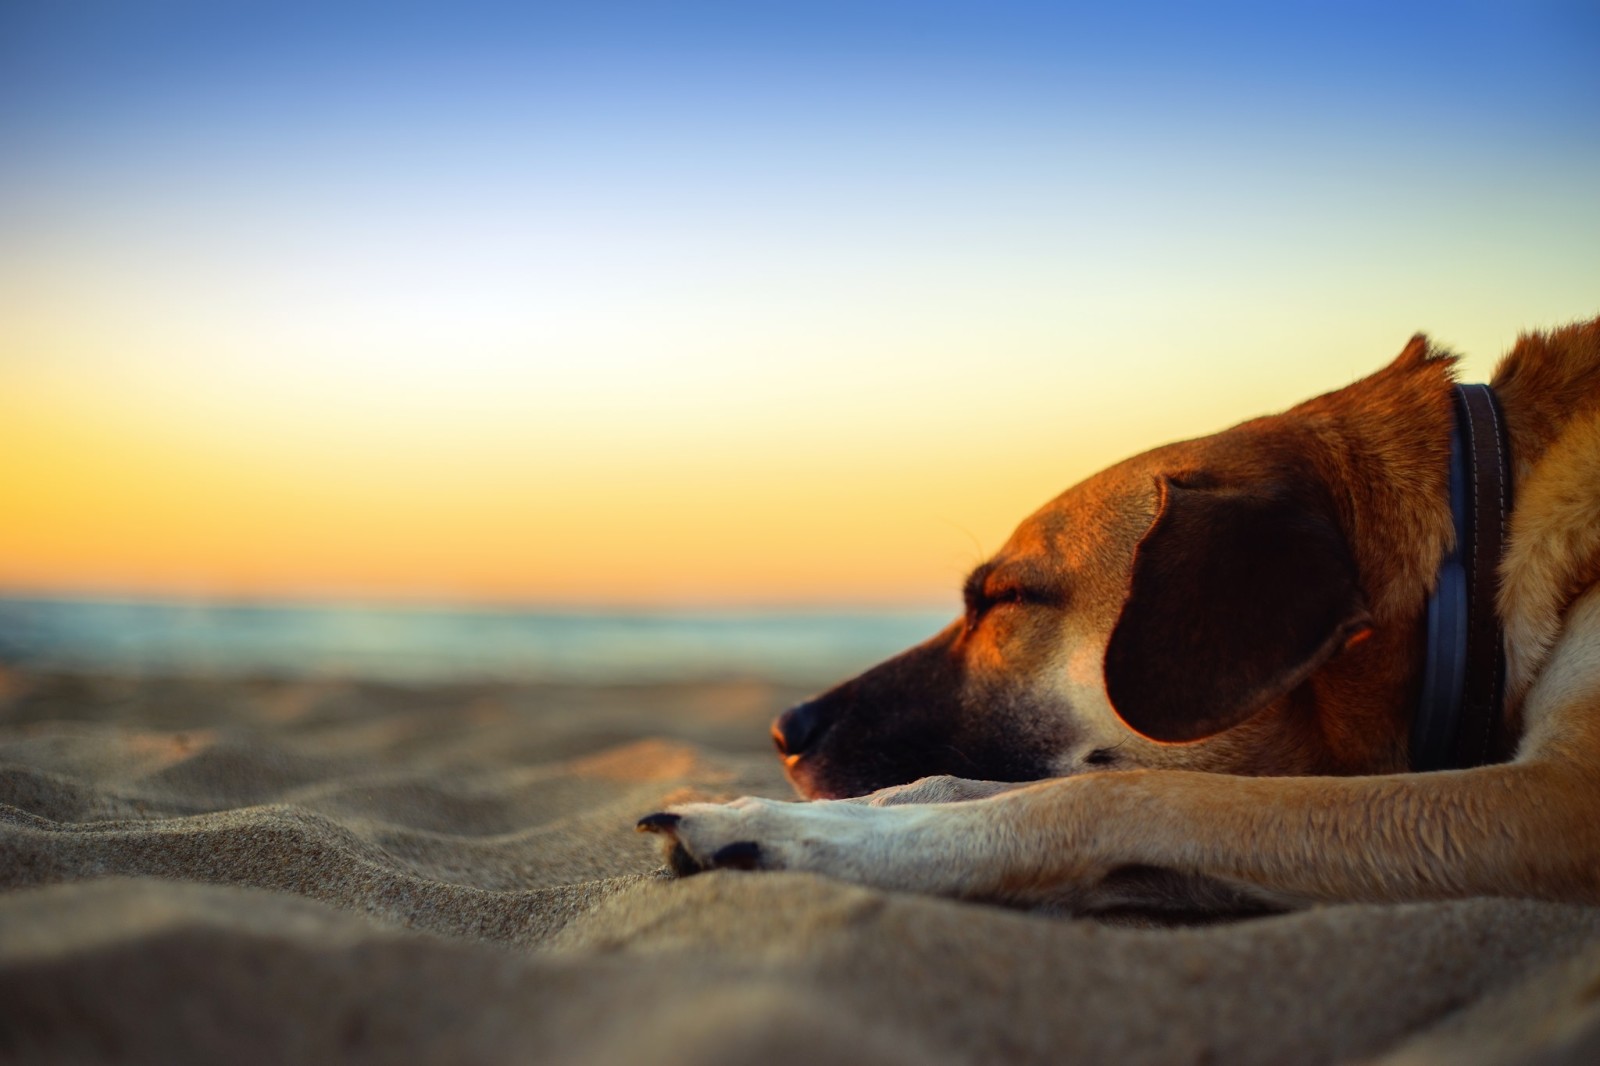 หมา, พระอาทิตย์ตกดิน, ชายหาด, ทะเล, พลบค่ำ, ทราย, พลบค่ำ, ความฝัน